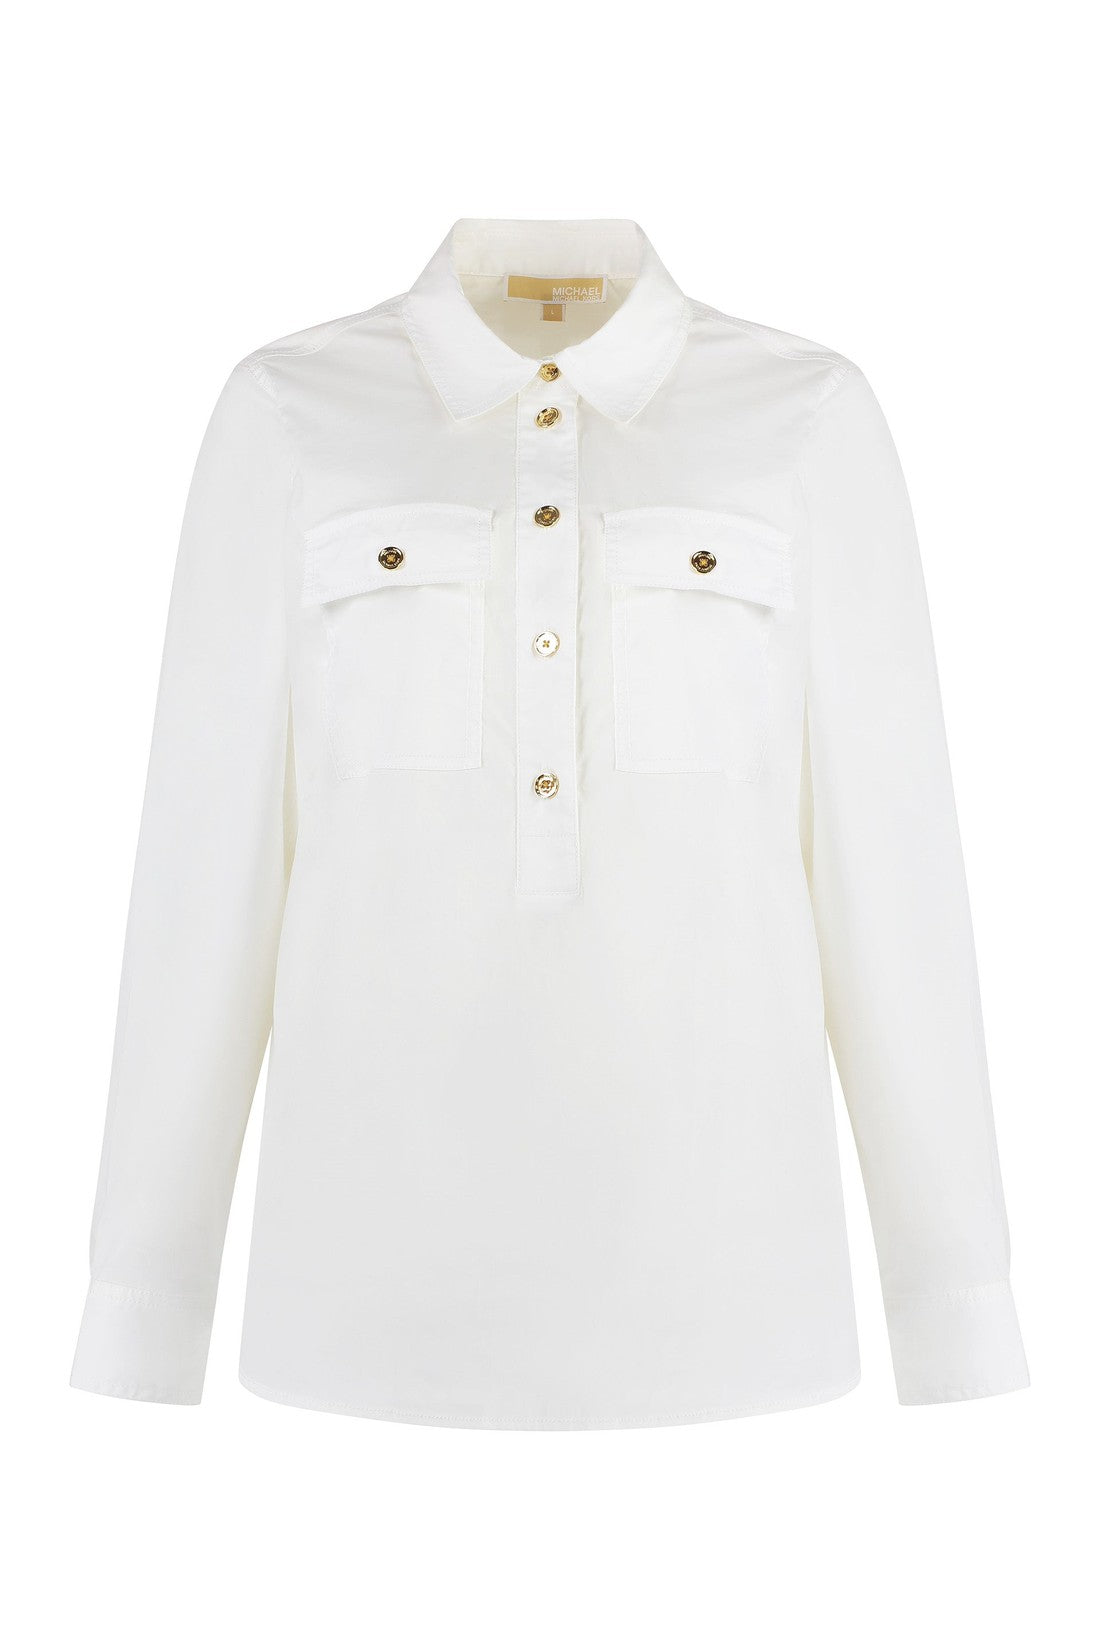 MICHAEL MICHAEL KORS-OUTLET-SALE-Stretch cotton shirt-ARCHIVIST